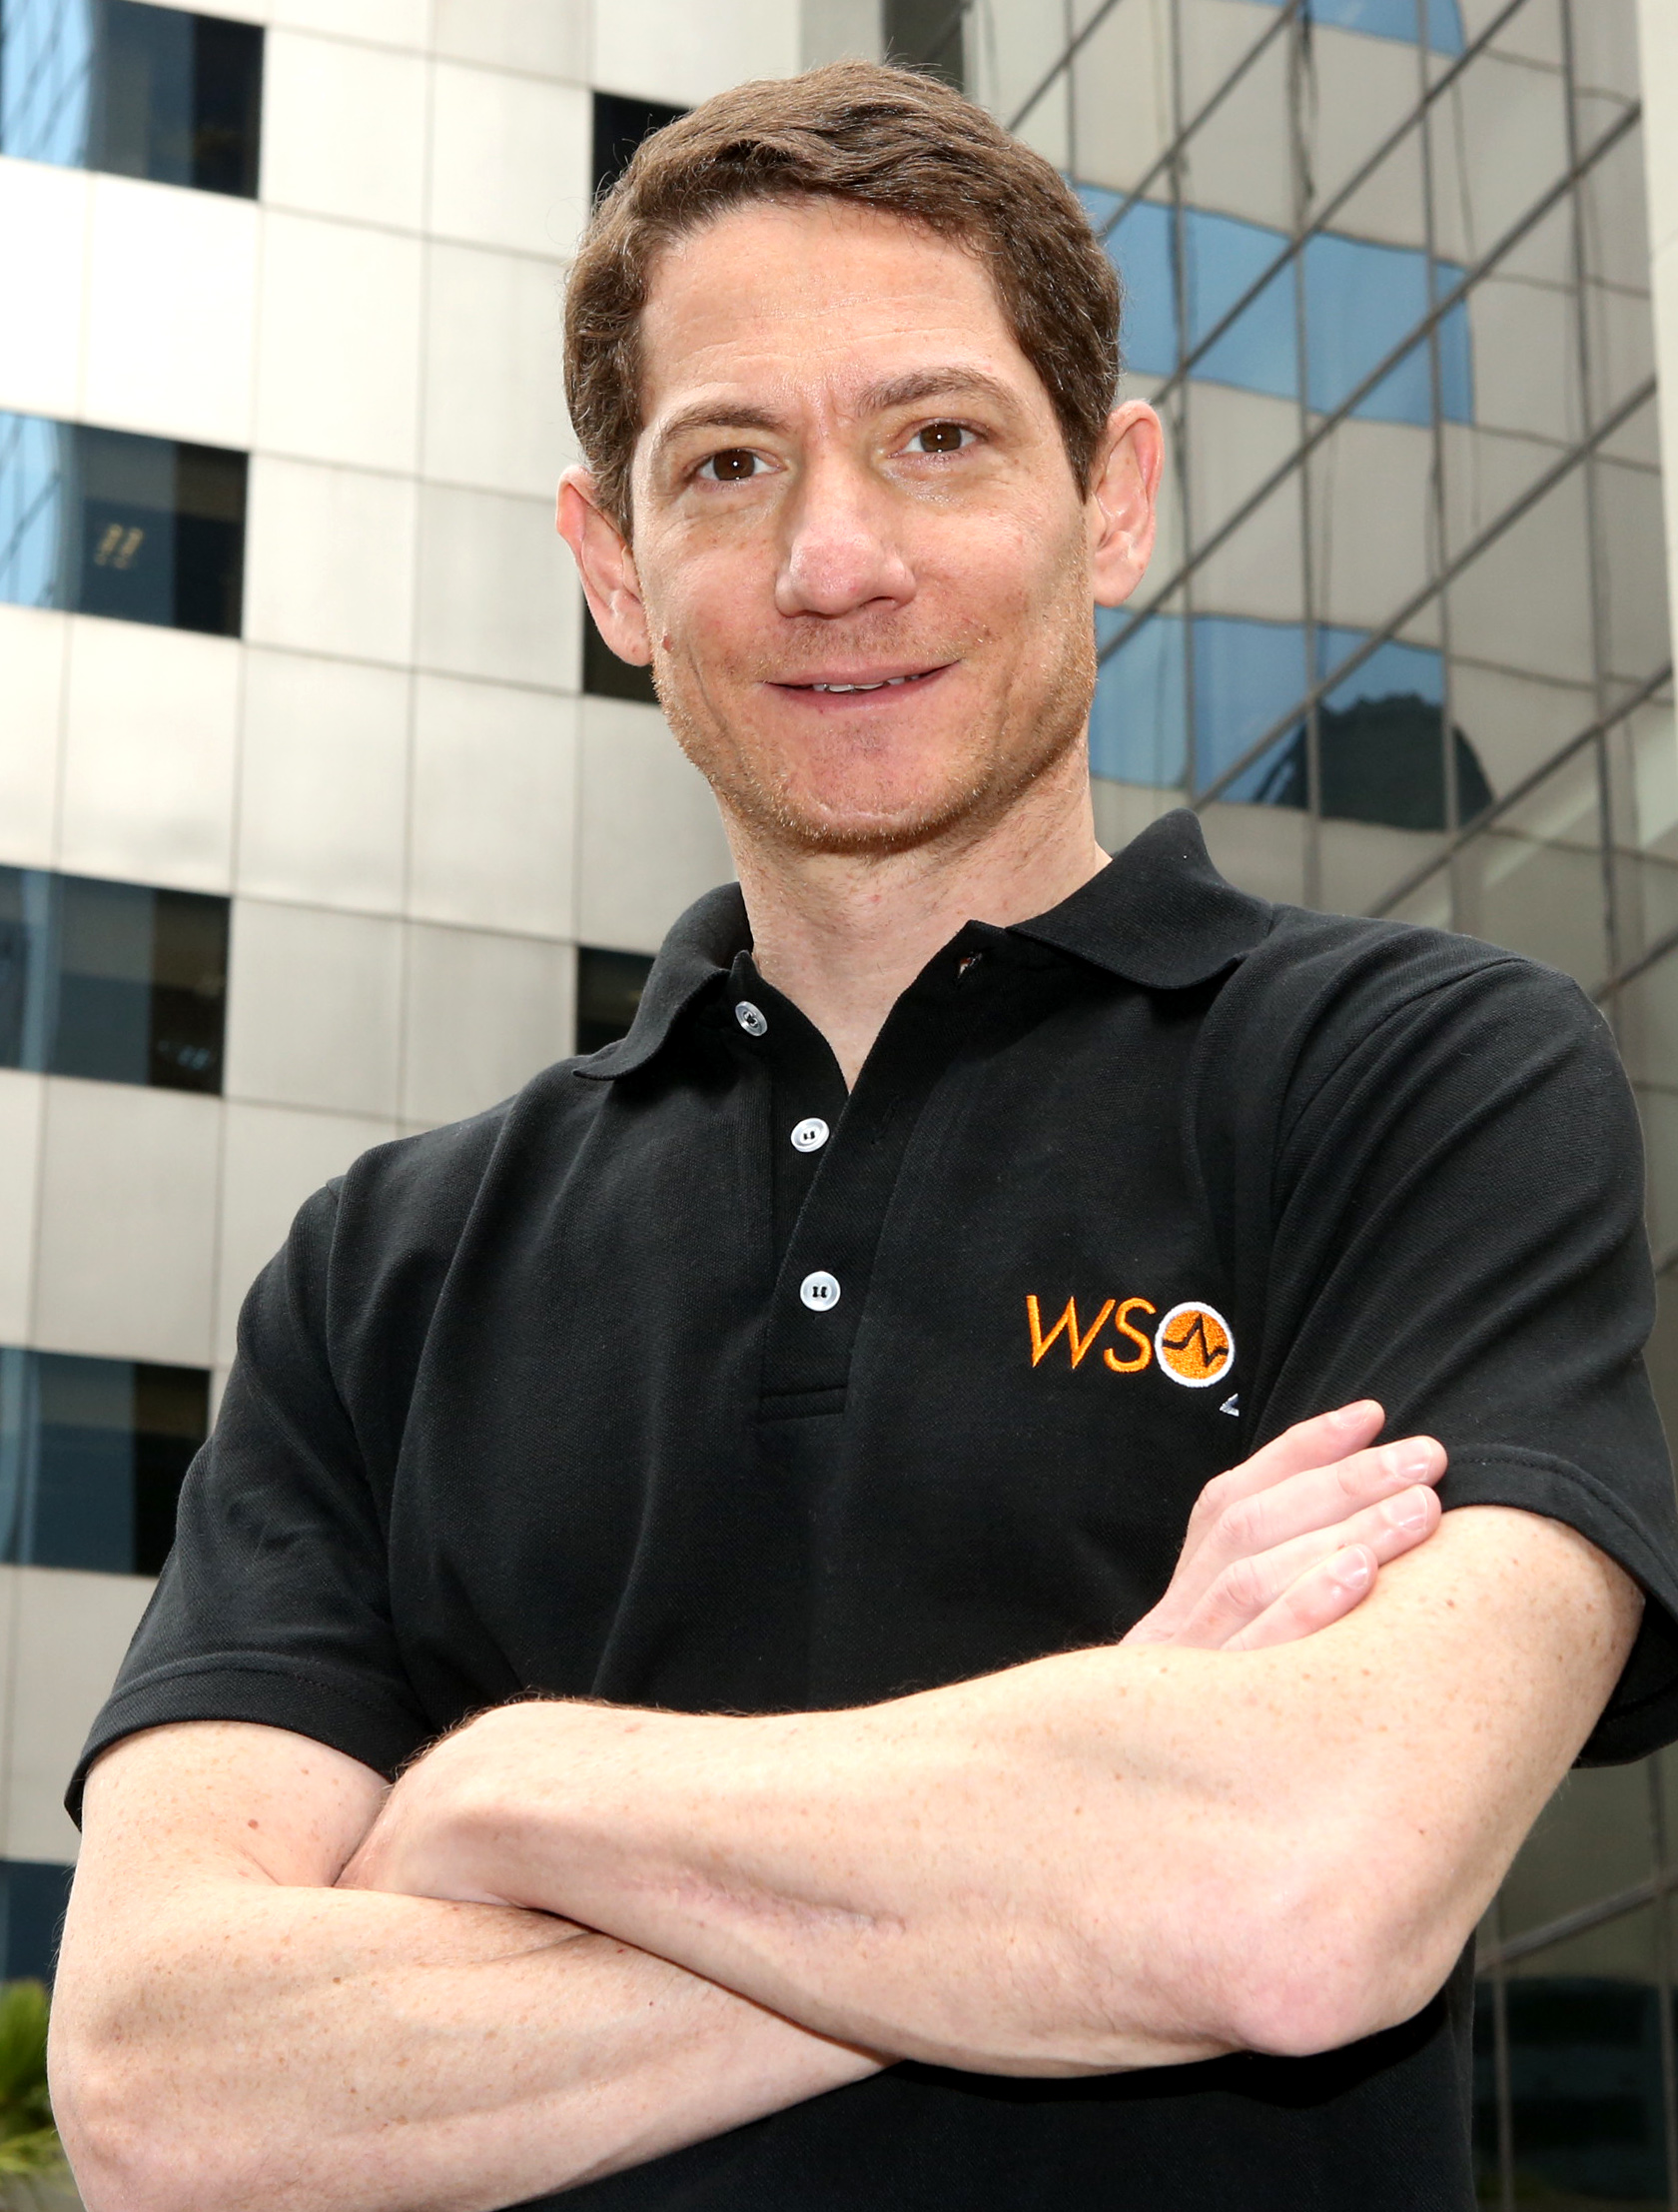 WSO2 lança programa global de aceleração de startups